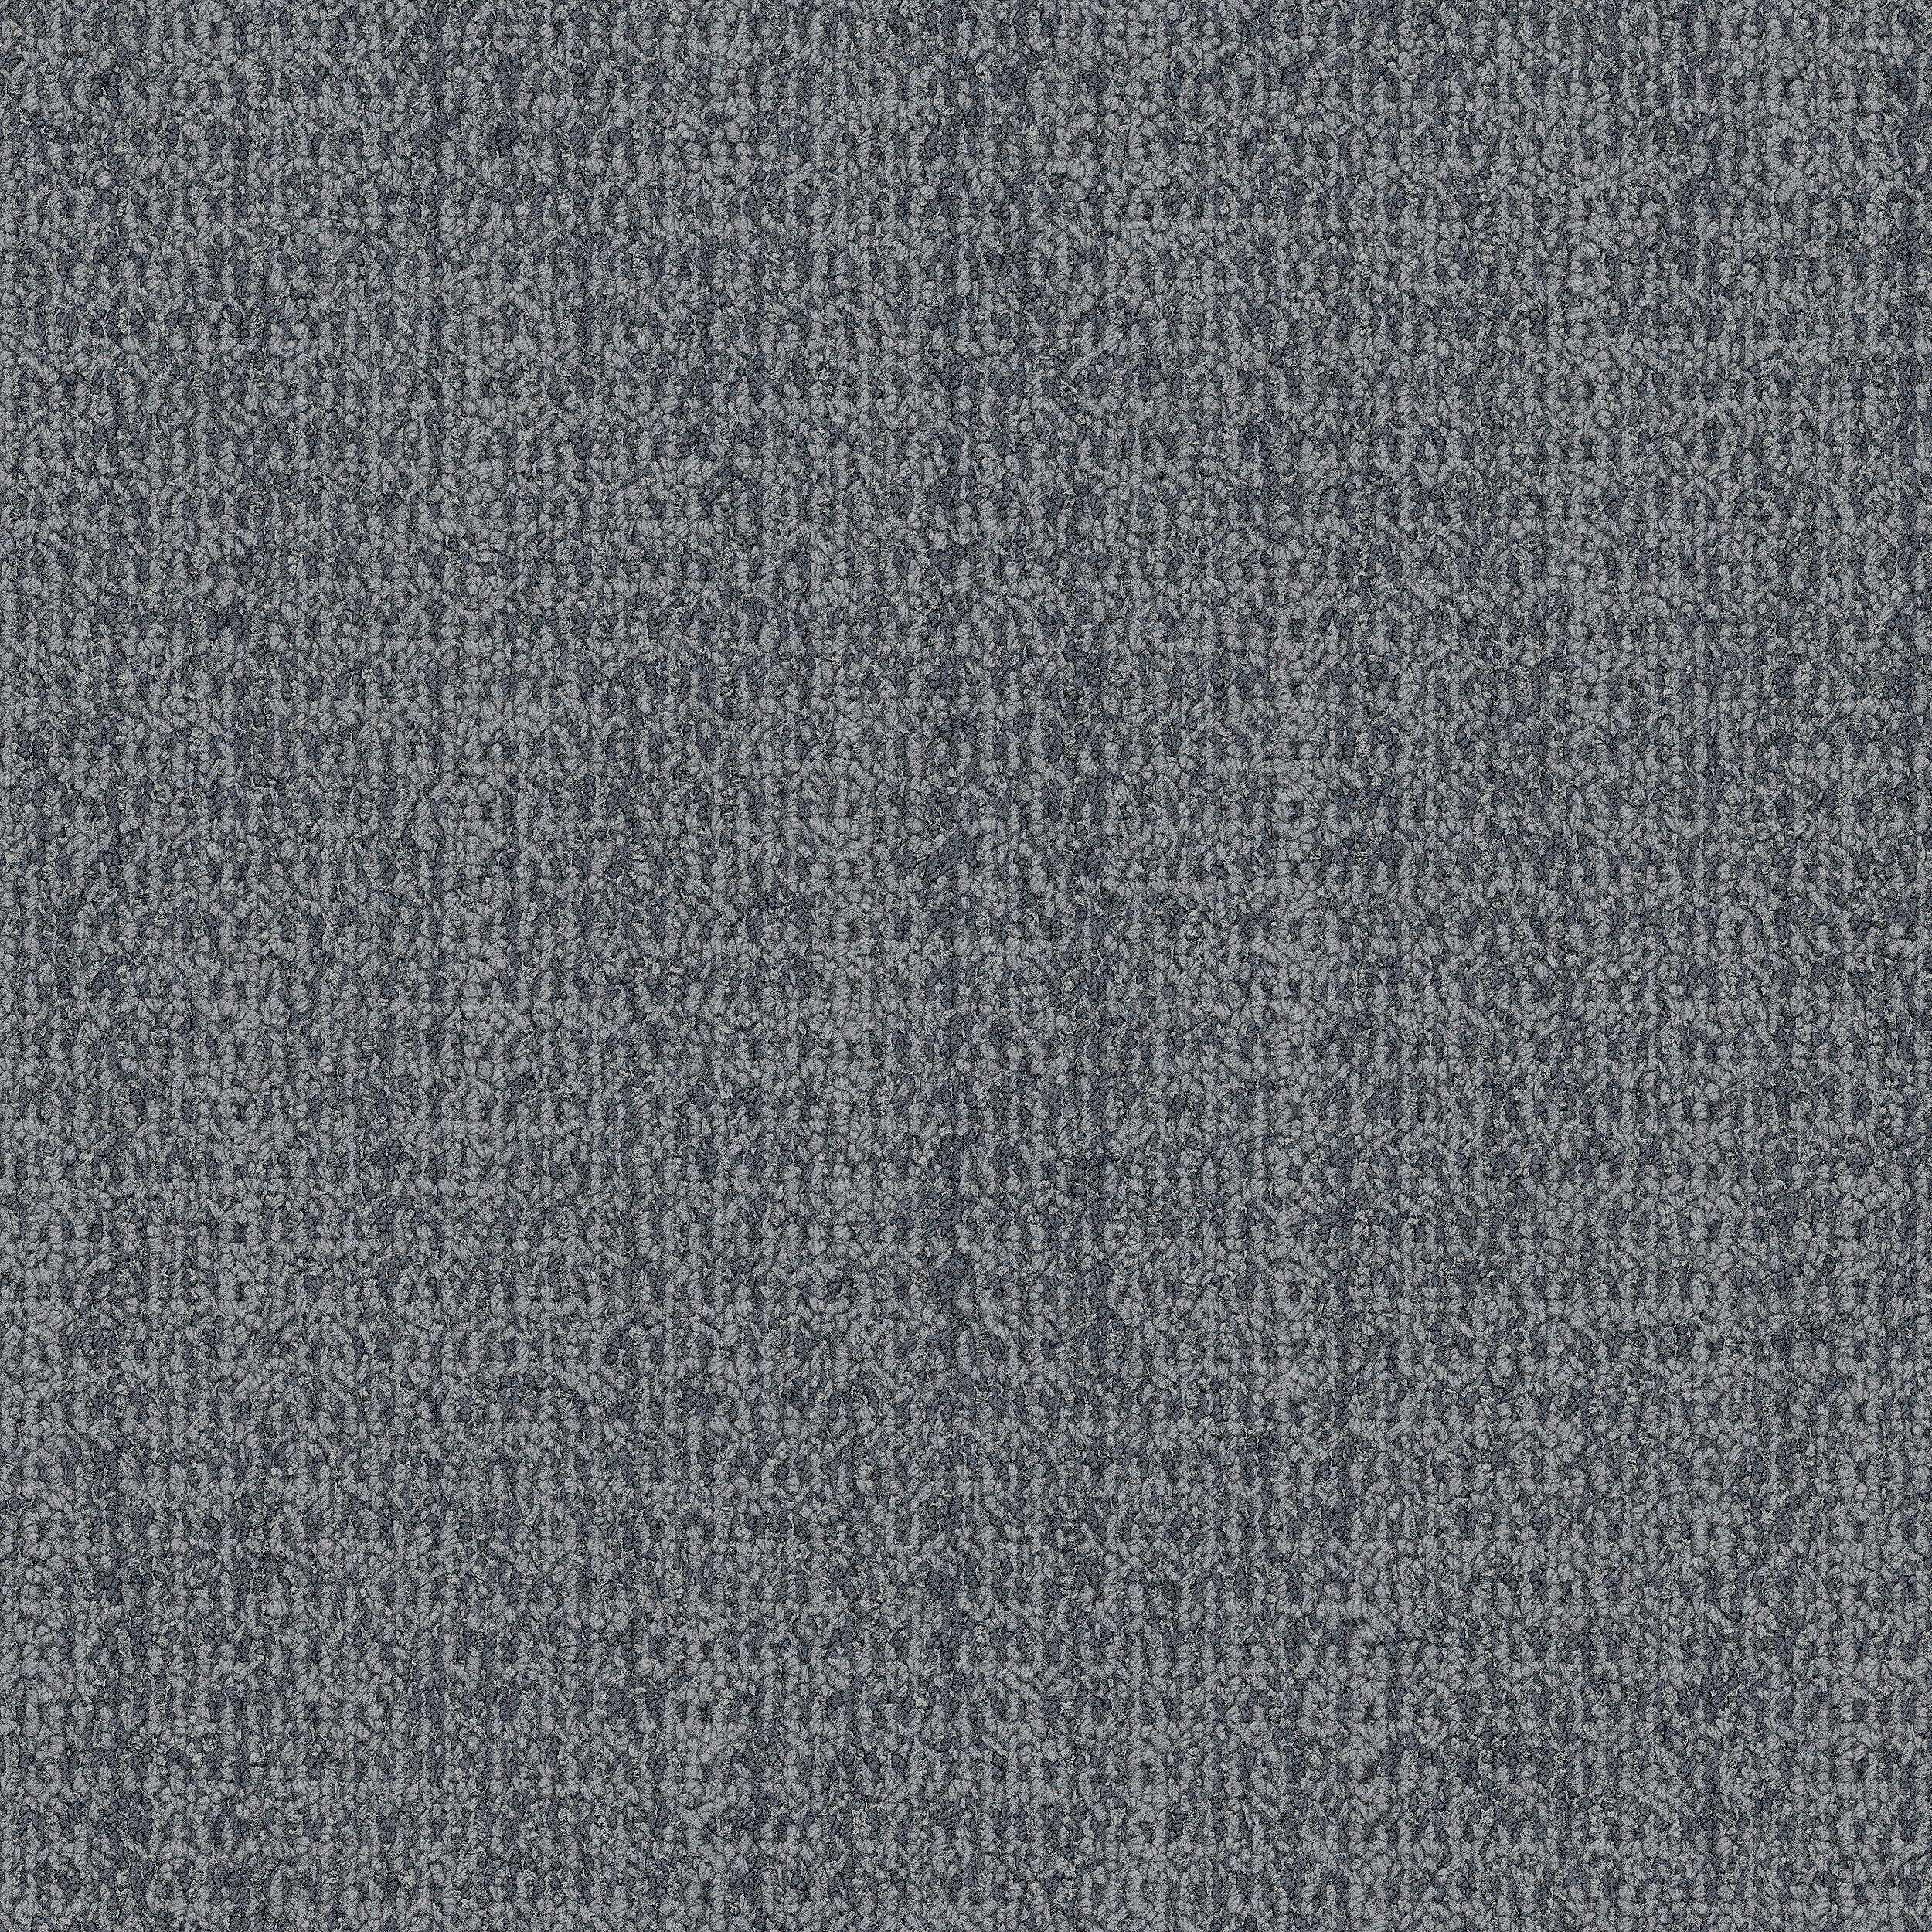 WG100 Carpet Tile In Charcoal Bildnummer 1